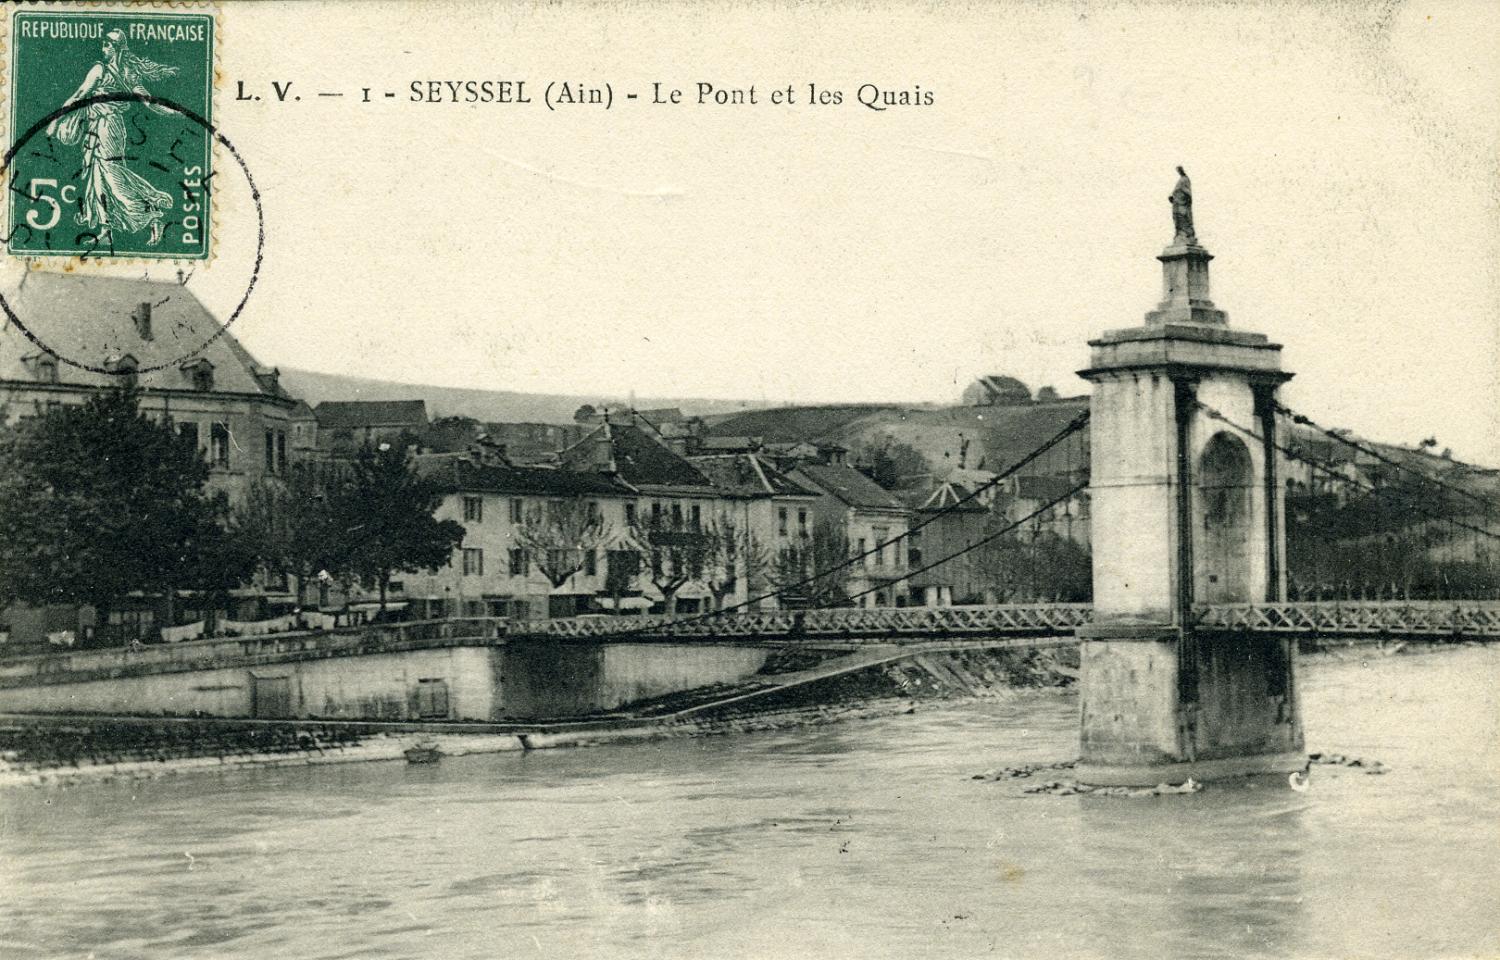 Seyssel (Ain) - Le Pont et les Quais